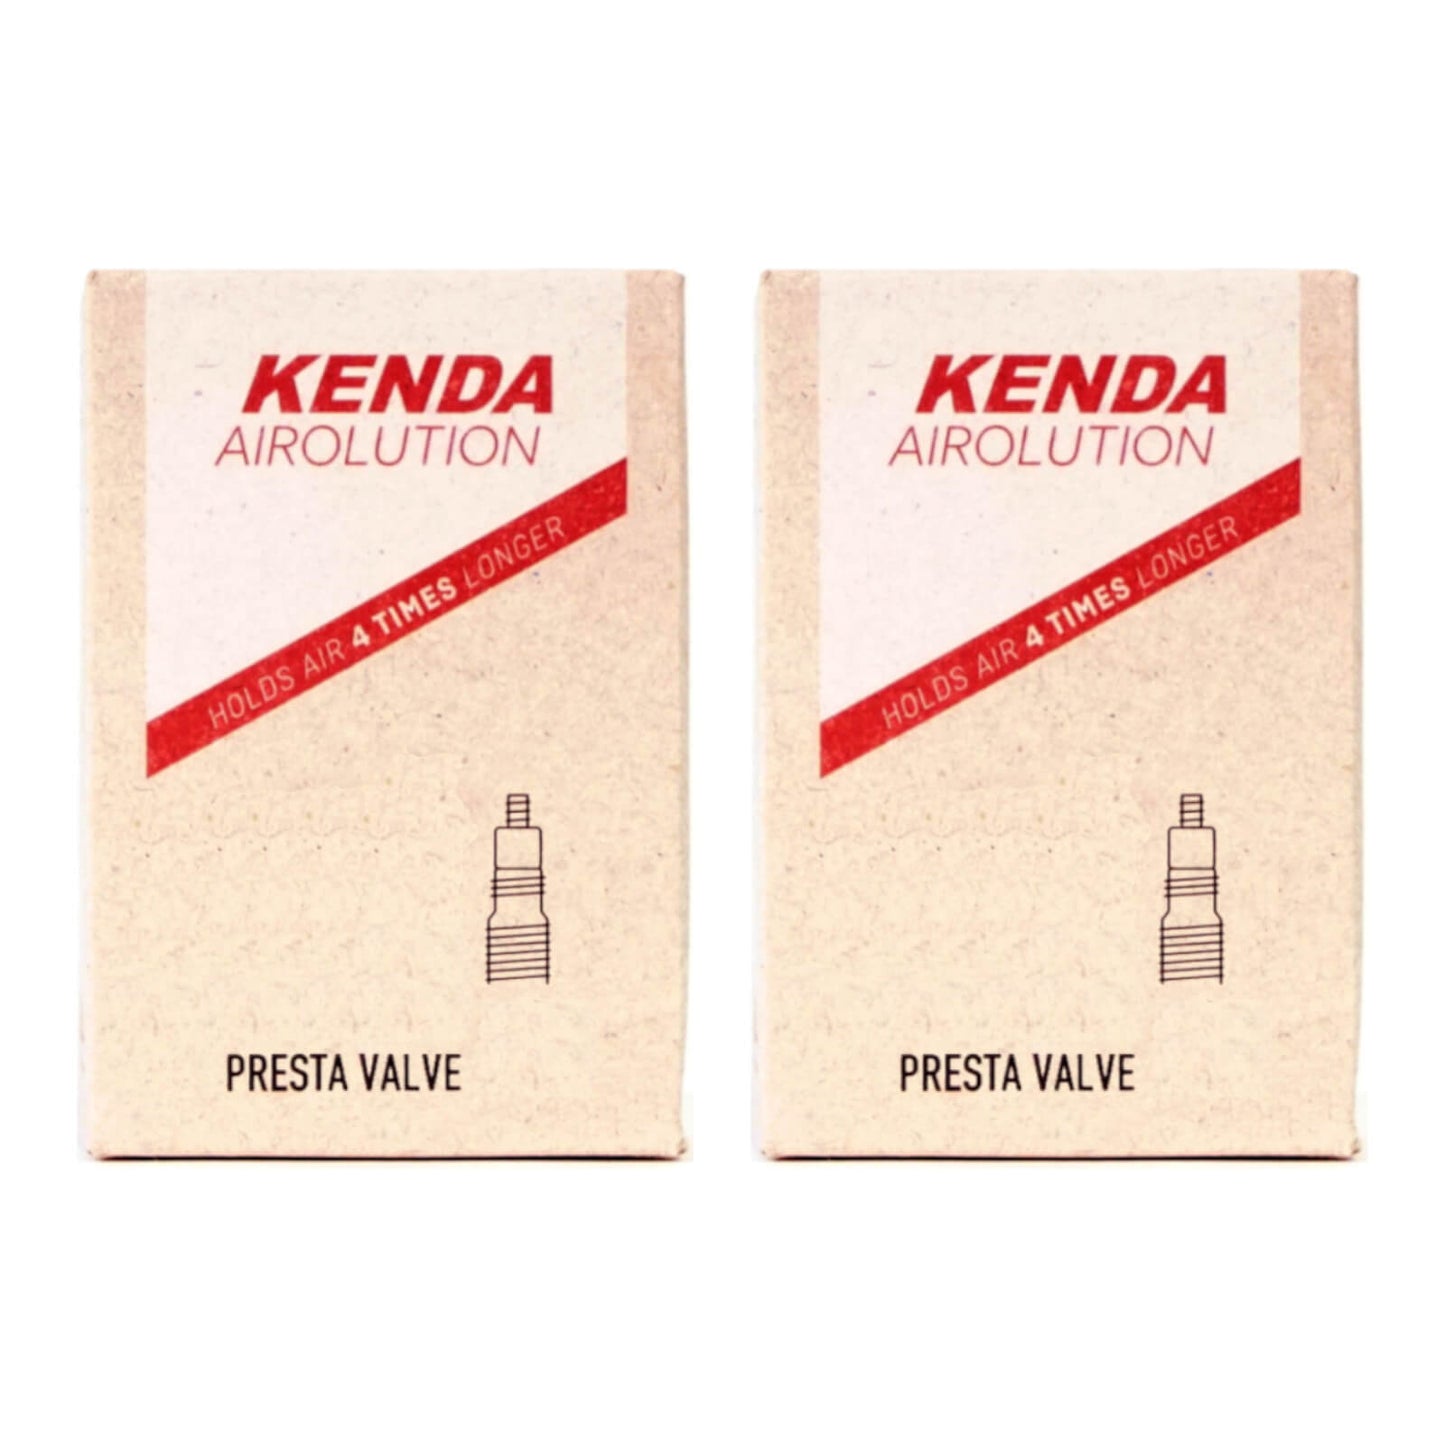 Kenda Airolution 29x2.4-2.8" 29 Inch Presta Valve Bike Inner Tube Pack of 2